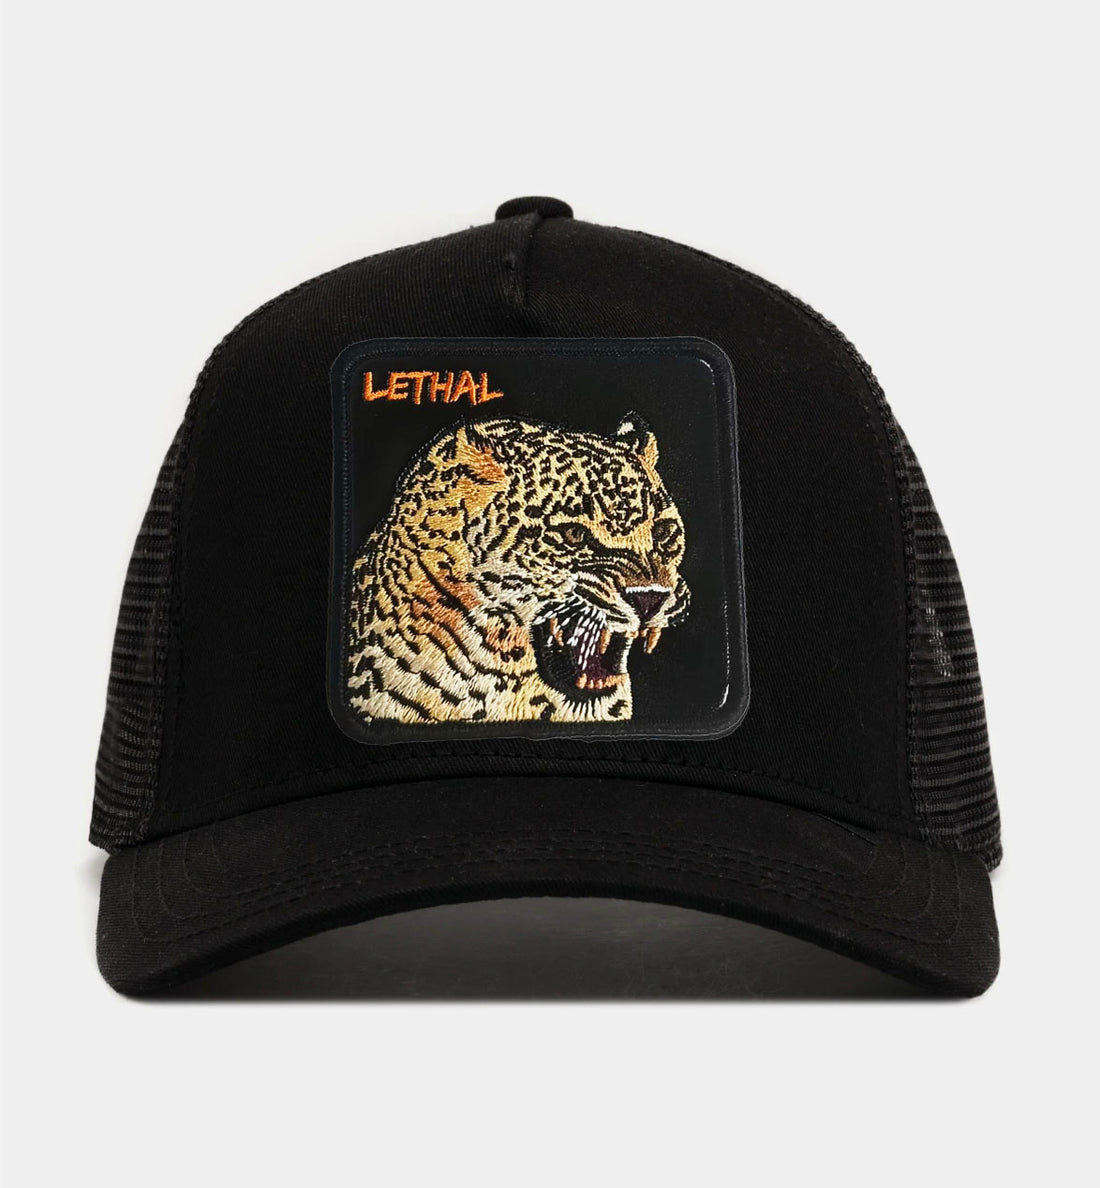 Jaguar - "Lethal" Trucker Hat